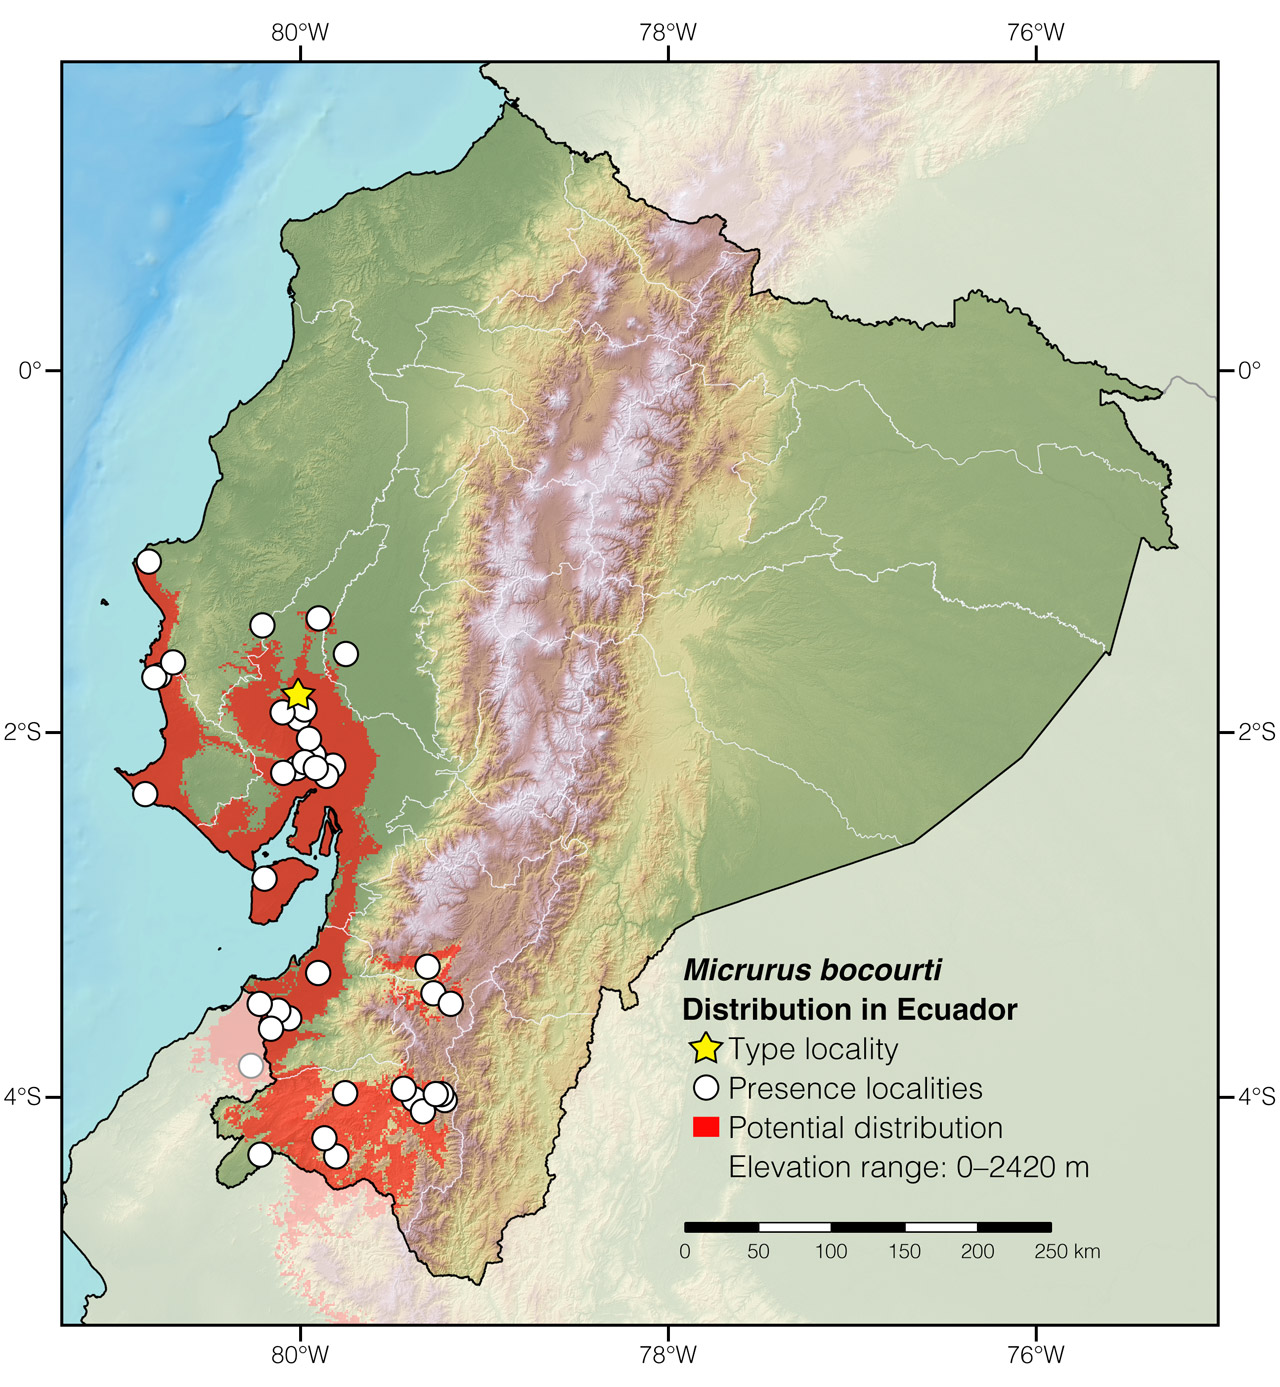 Distribution of Micrurus bocourti in Ecuador